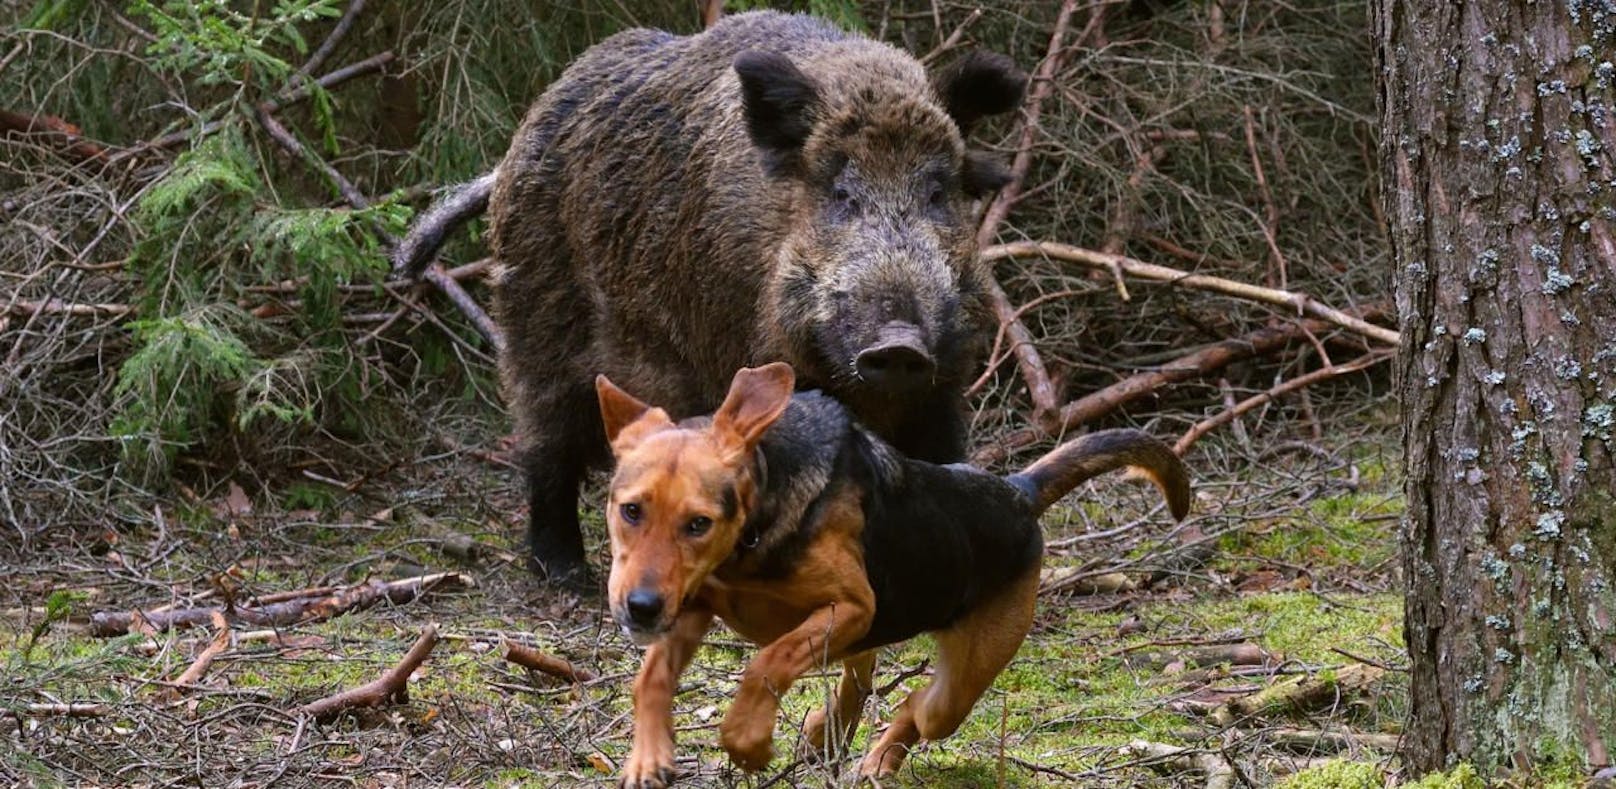 Wildschweine töteten Jagdhund bei Treibjagd